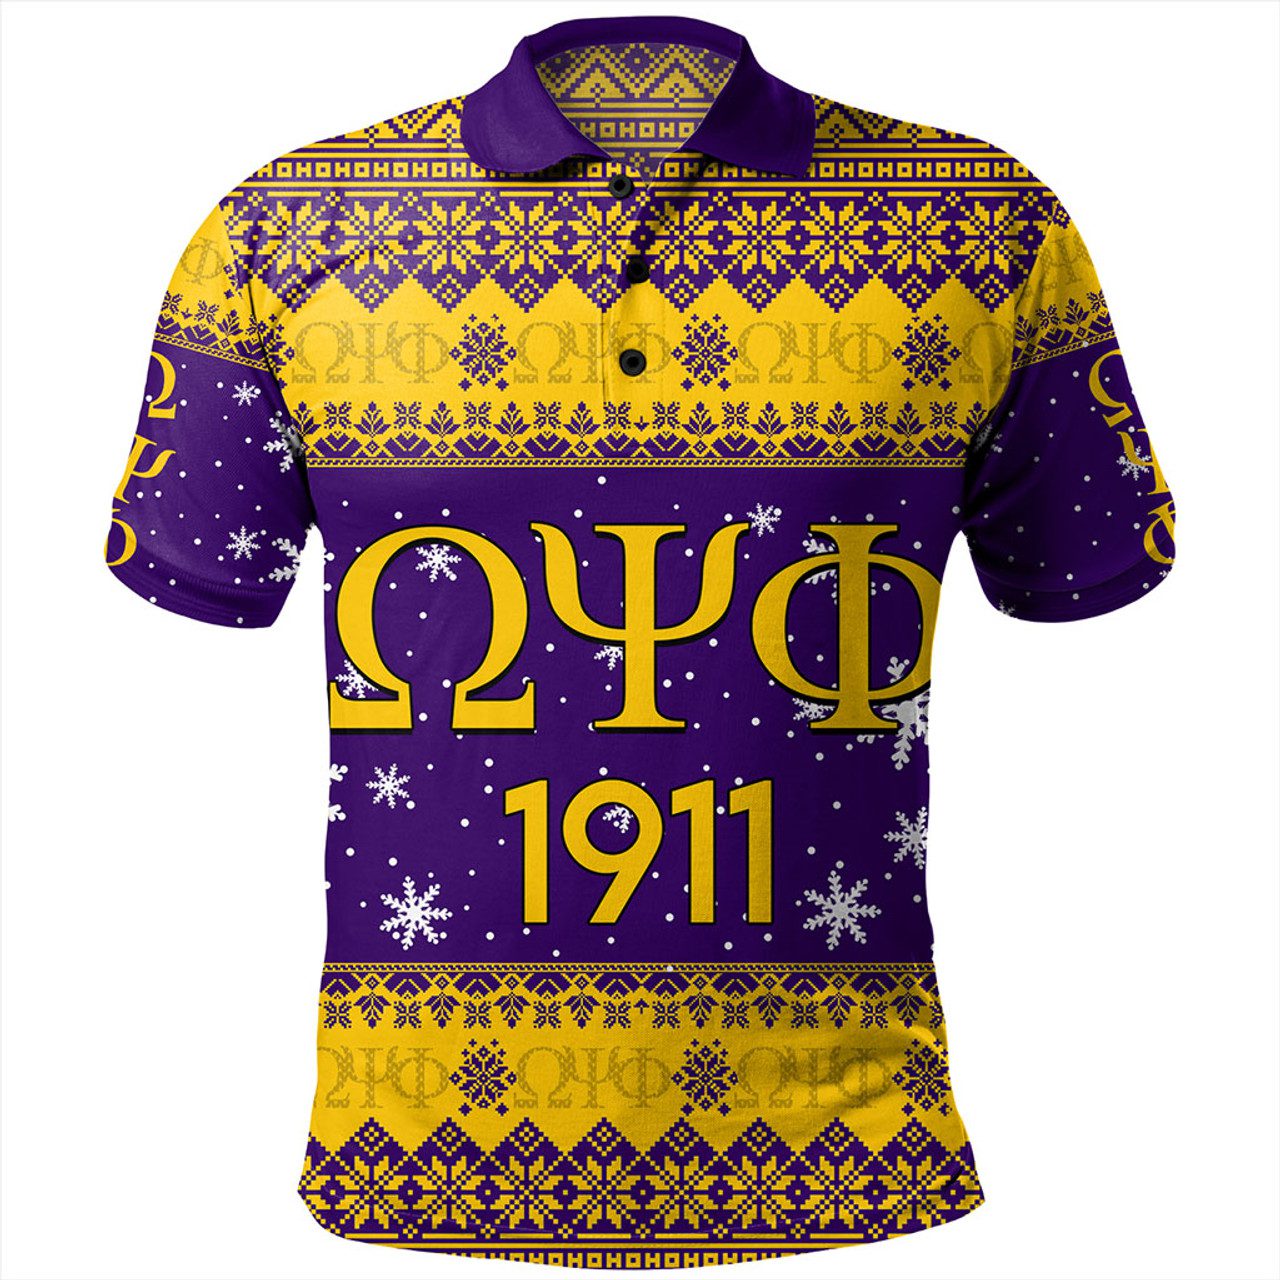 Omega Psi Phi Polo Shirt Fraternity Inc Christmas